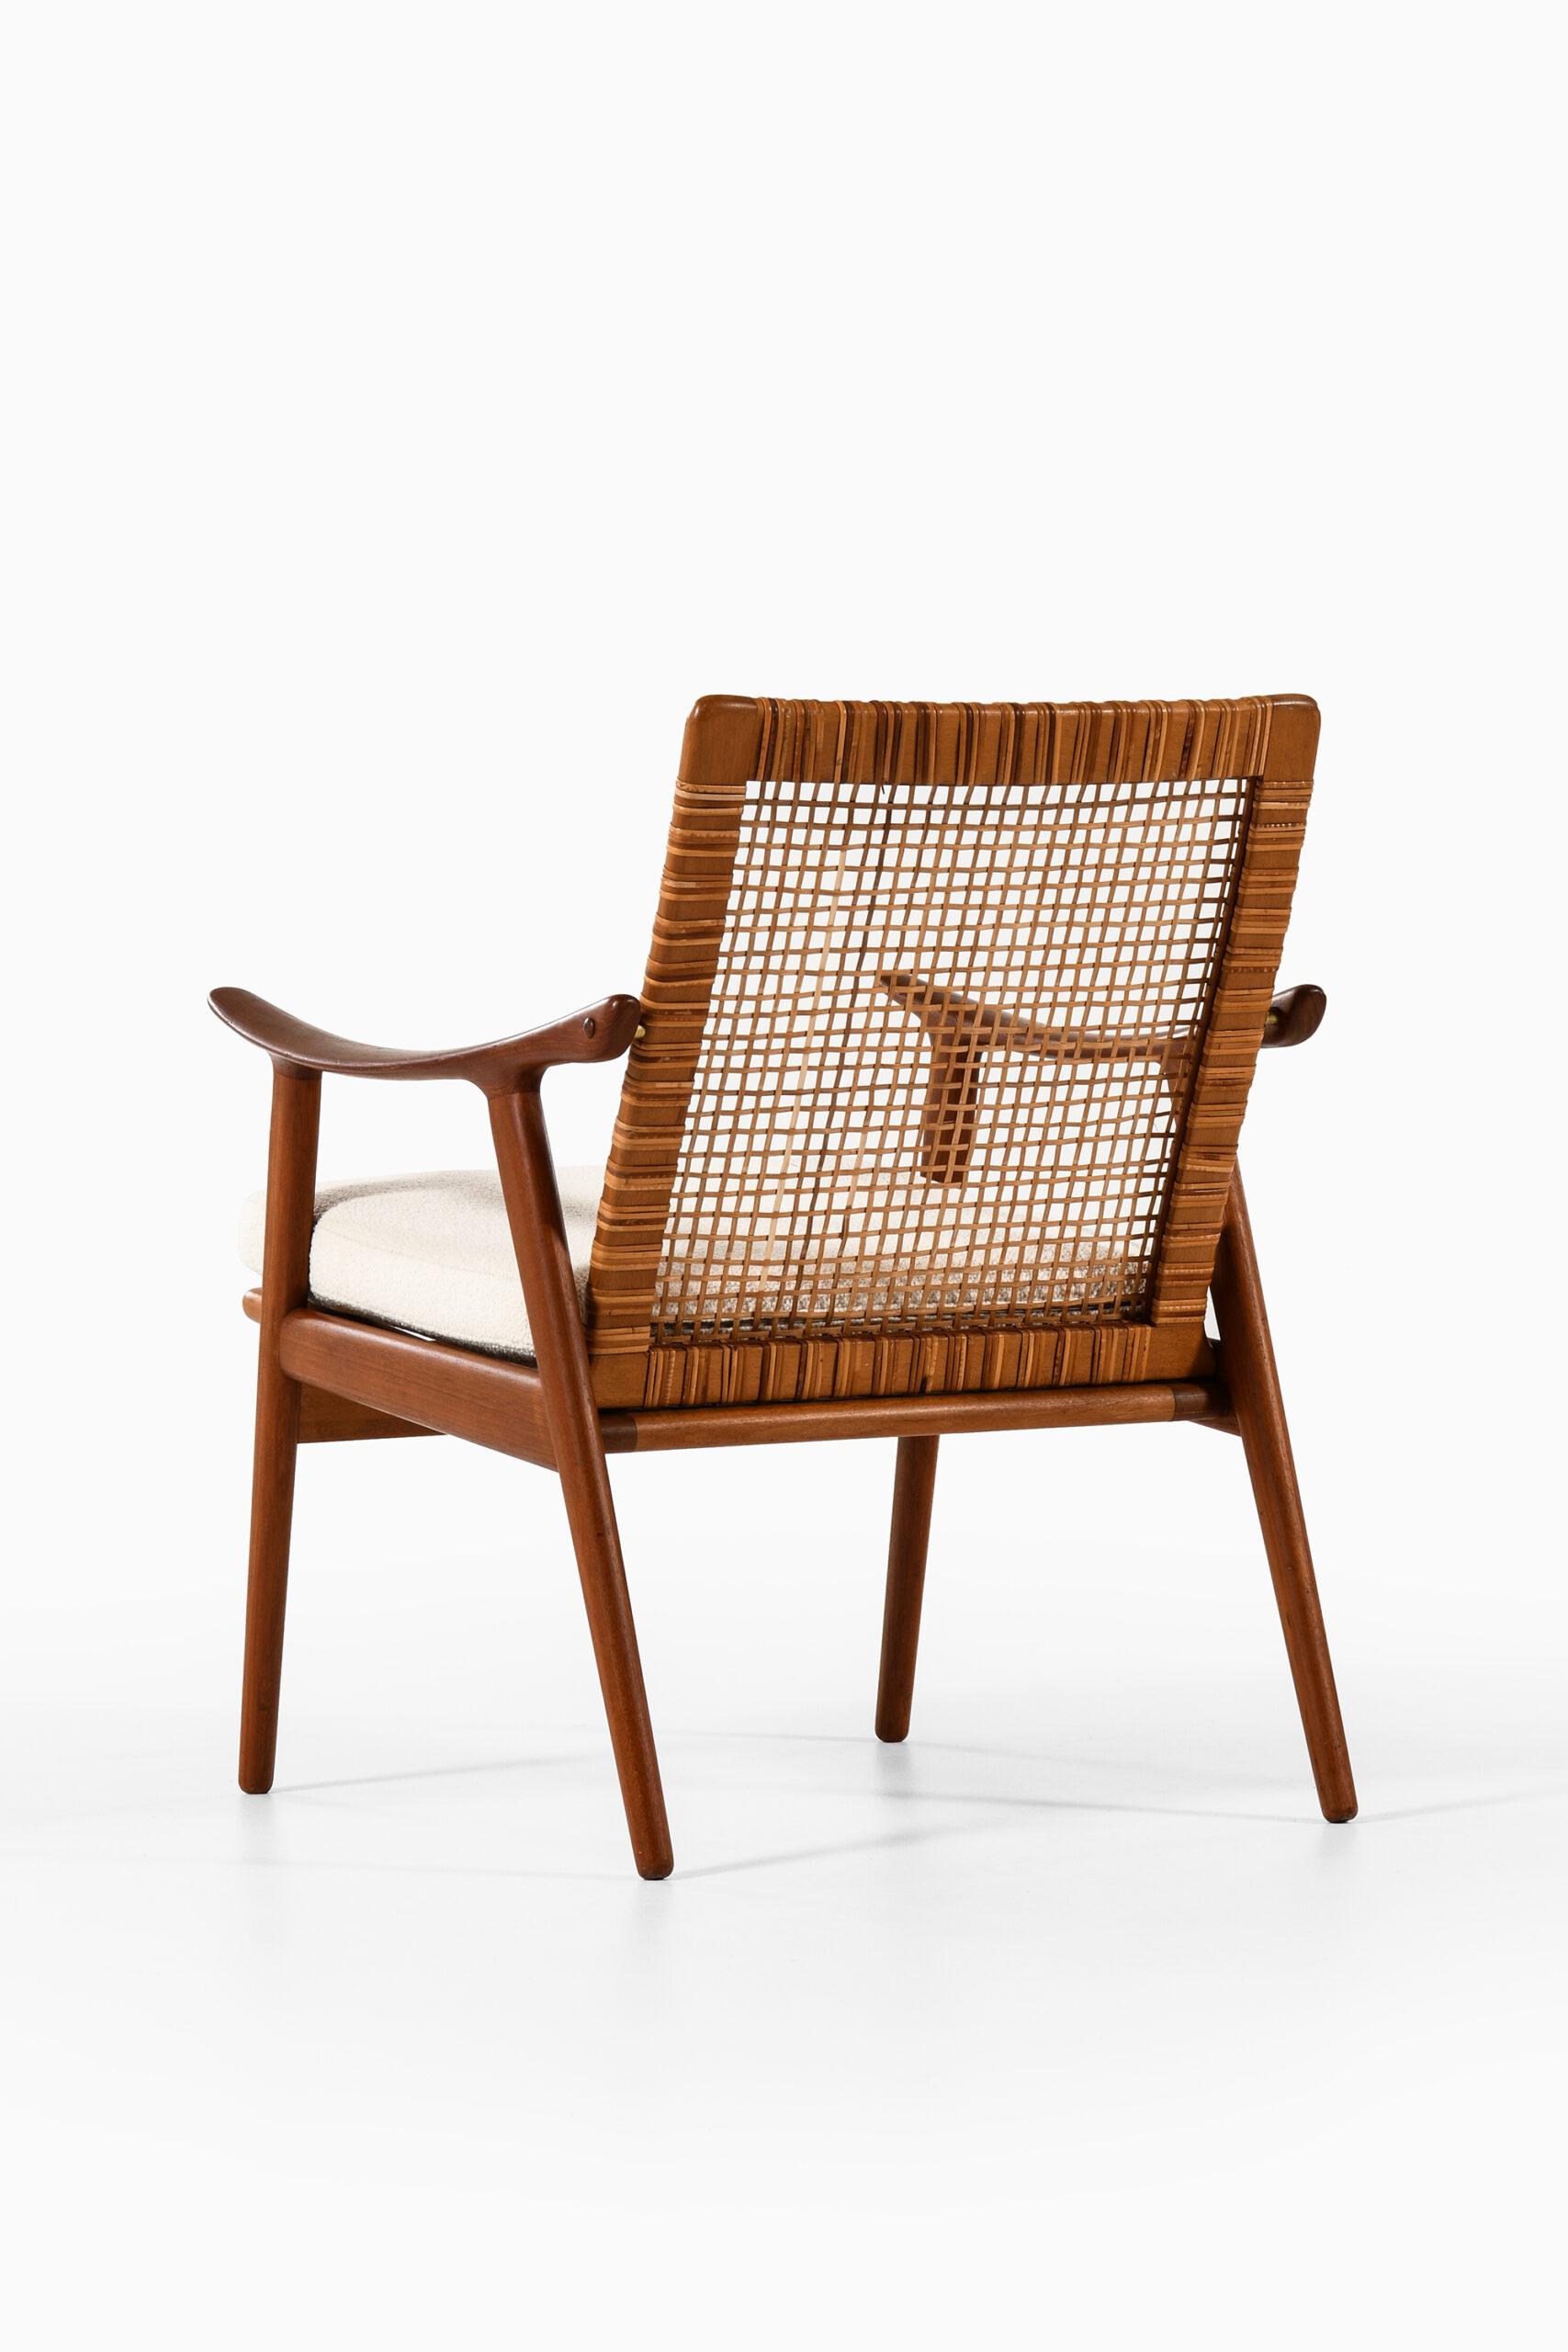 Bouclé Fredrik Kayser Easy Chair Produced by Vatne Møbler